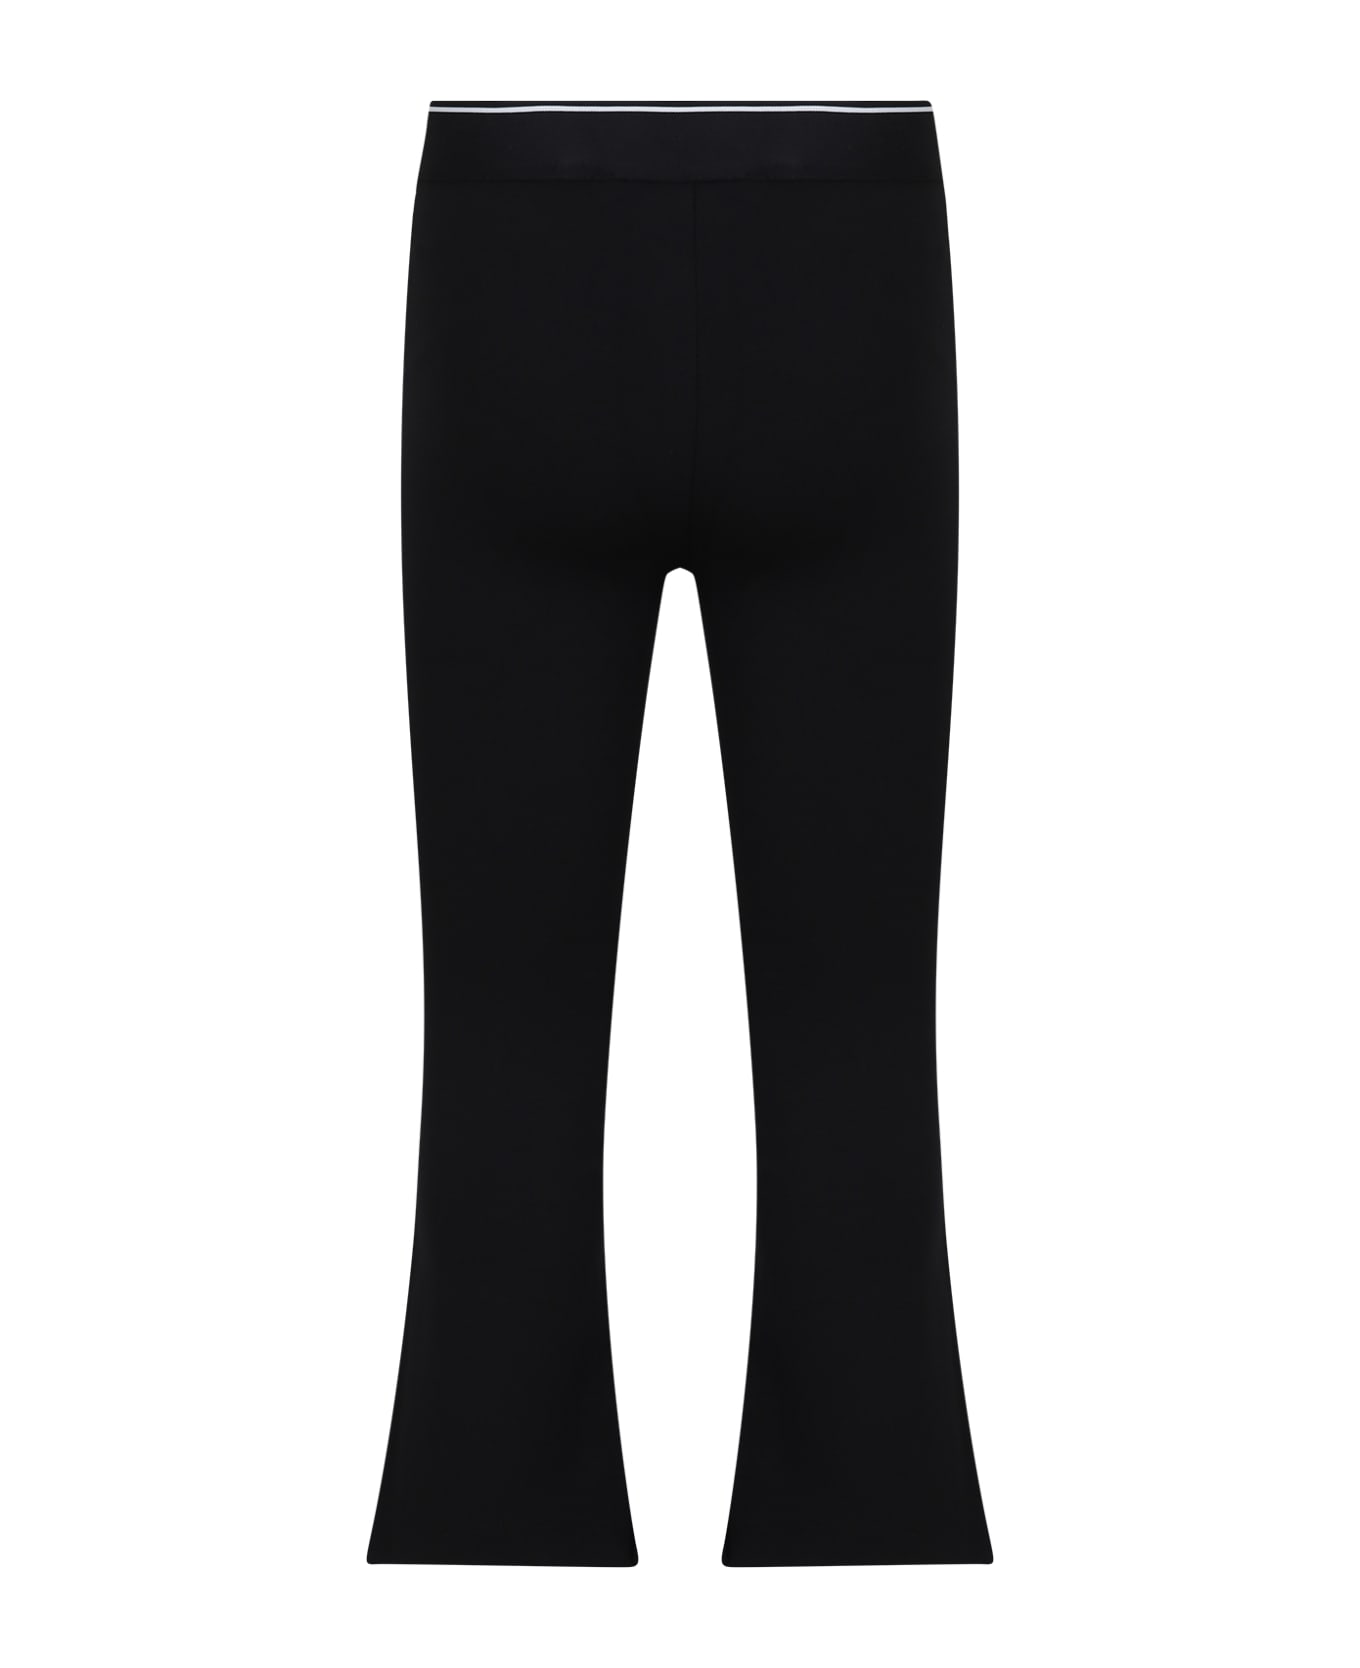 Calvin Klein Black Leggings For Girl With Logo - Black